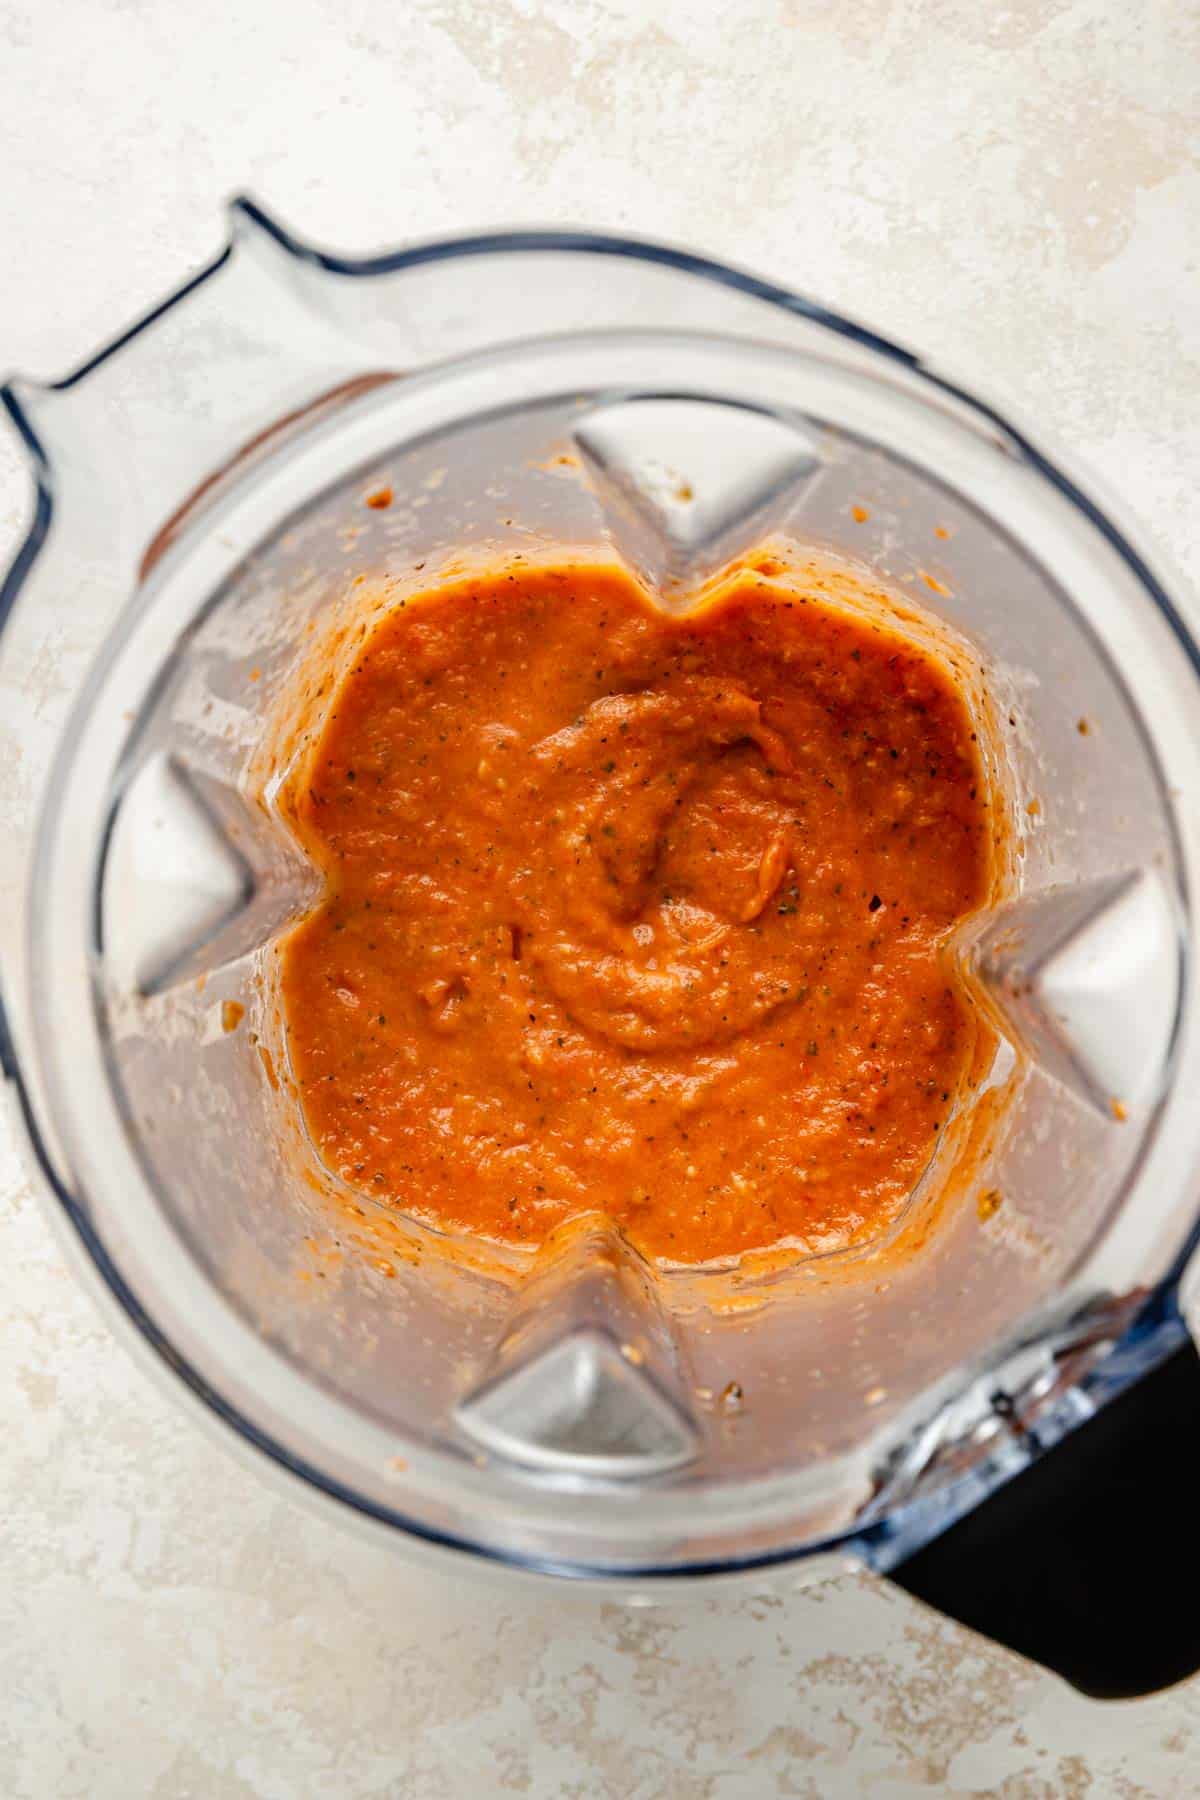 Blending tomato sauce in a blender.